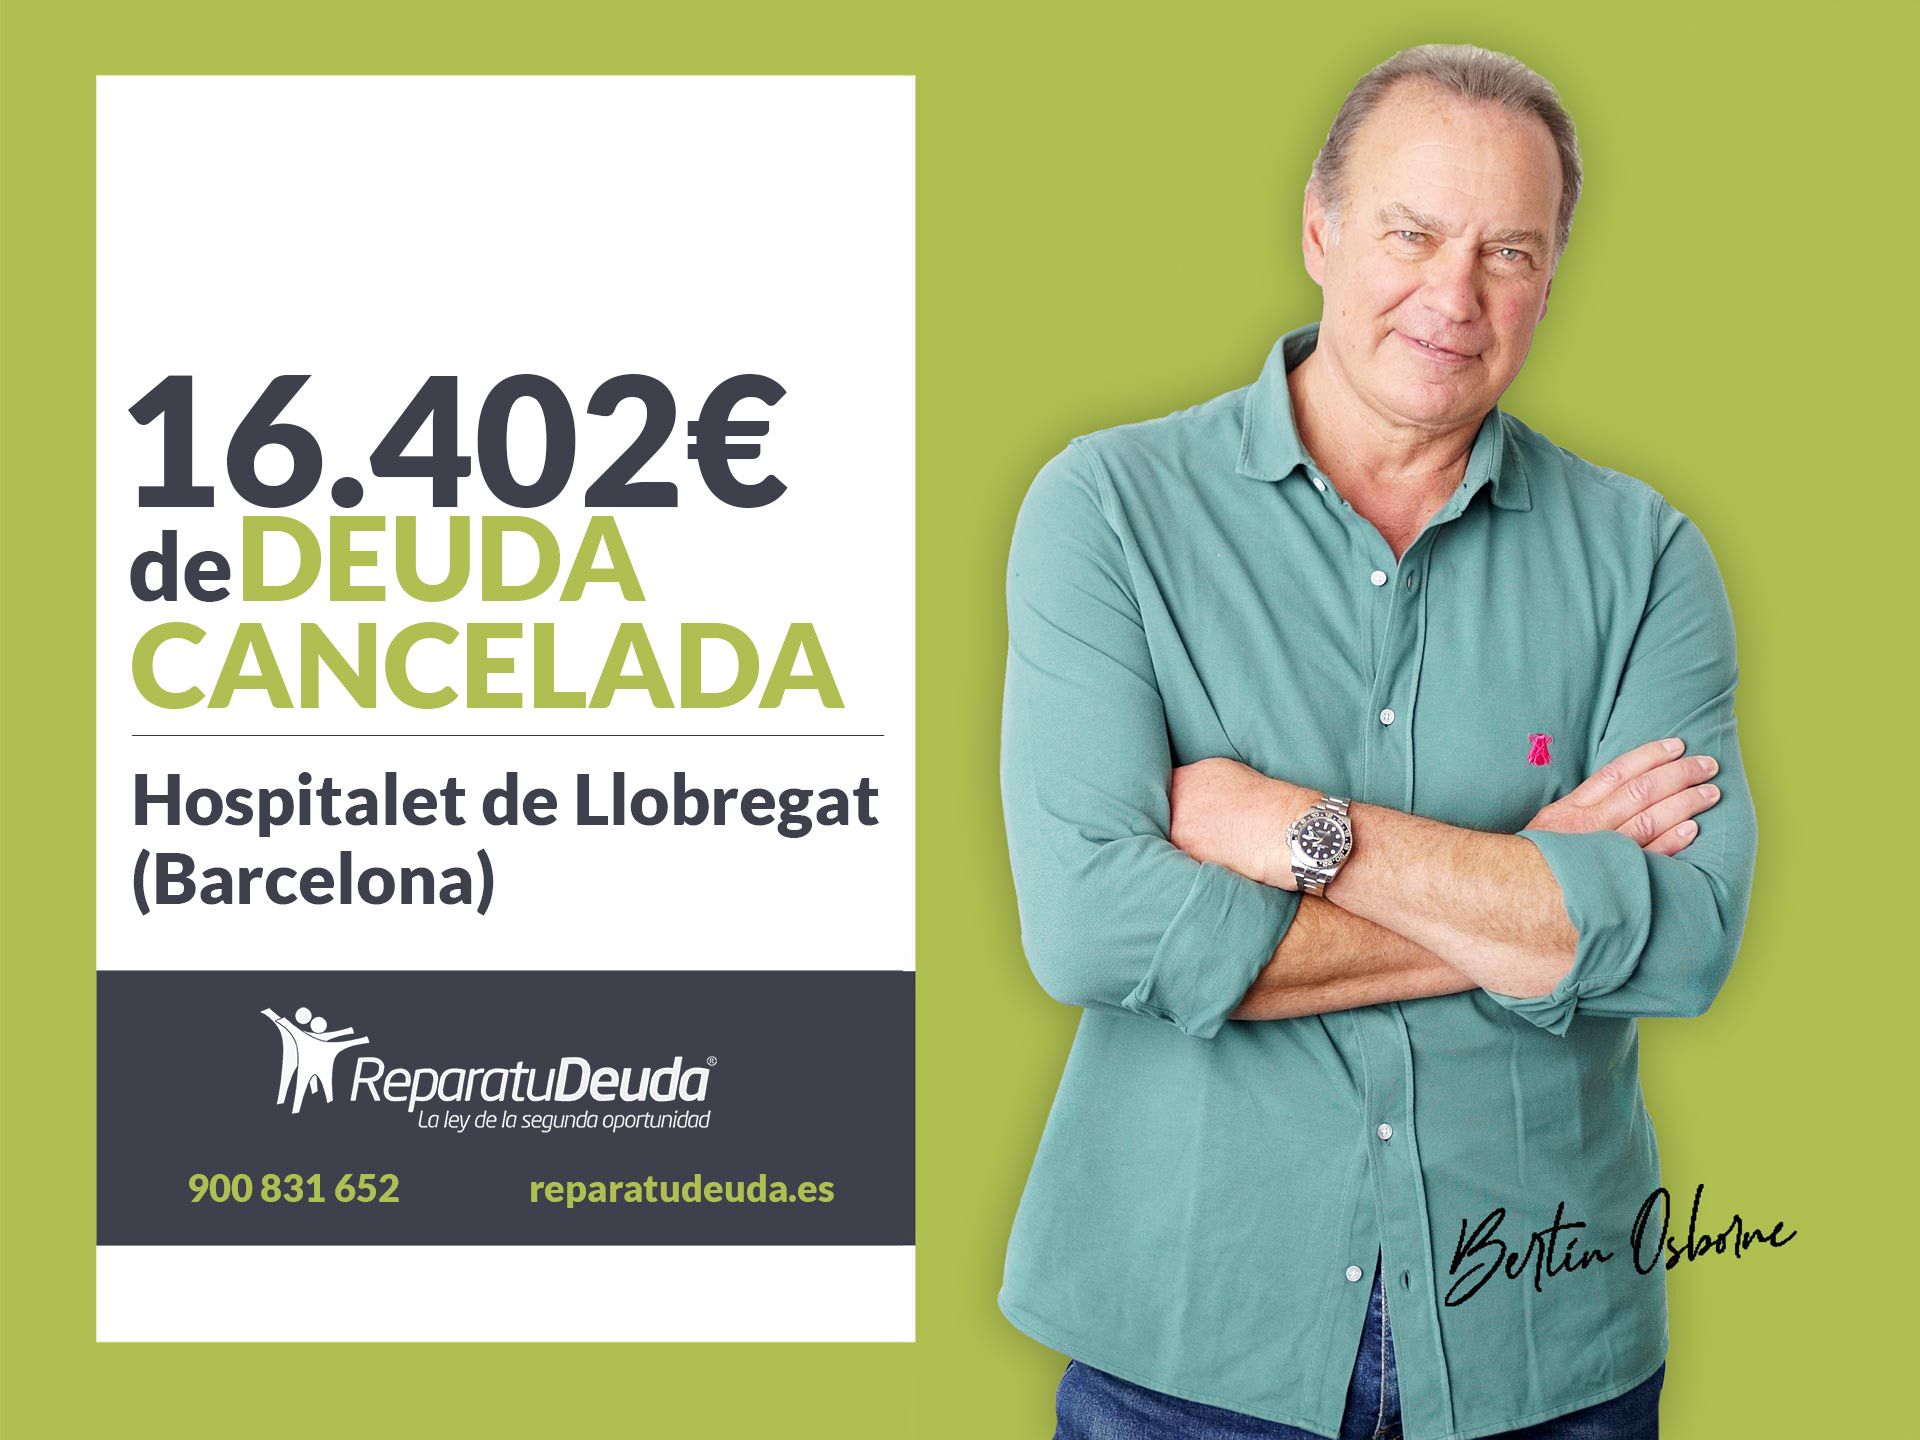 Repara tu Deuda cancela 16.402? en L'Hospitalet de Llobregat (Barcelona) con la Ley de Segunda Oportunidad